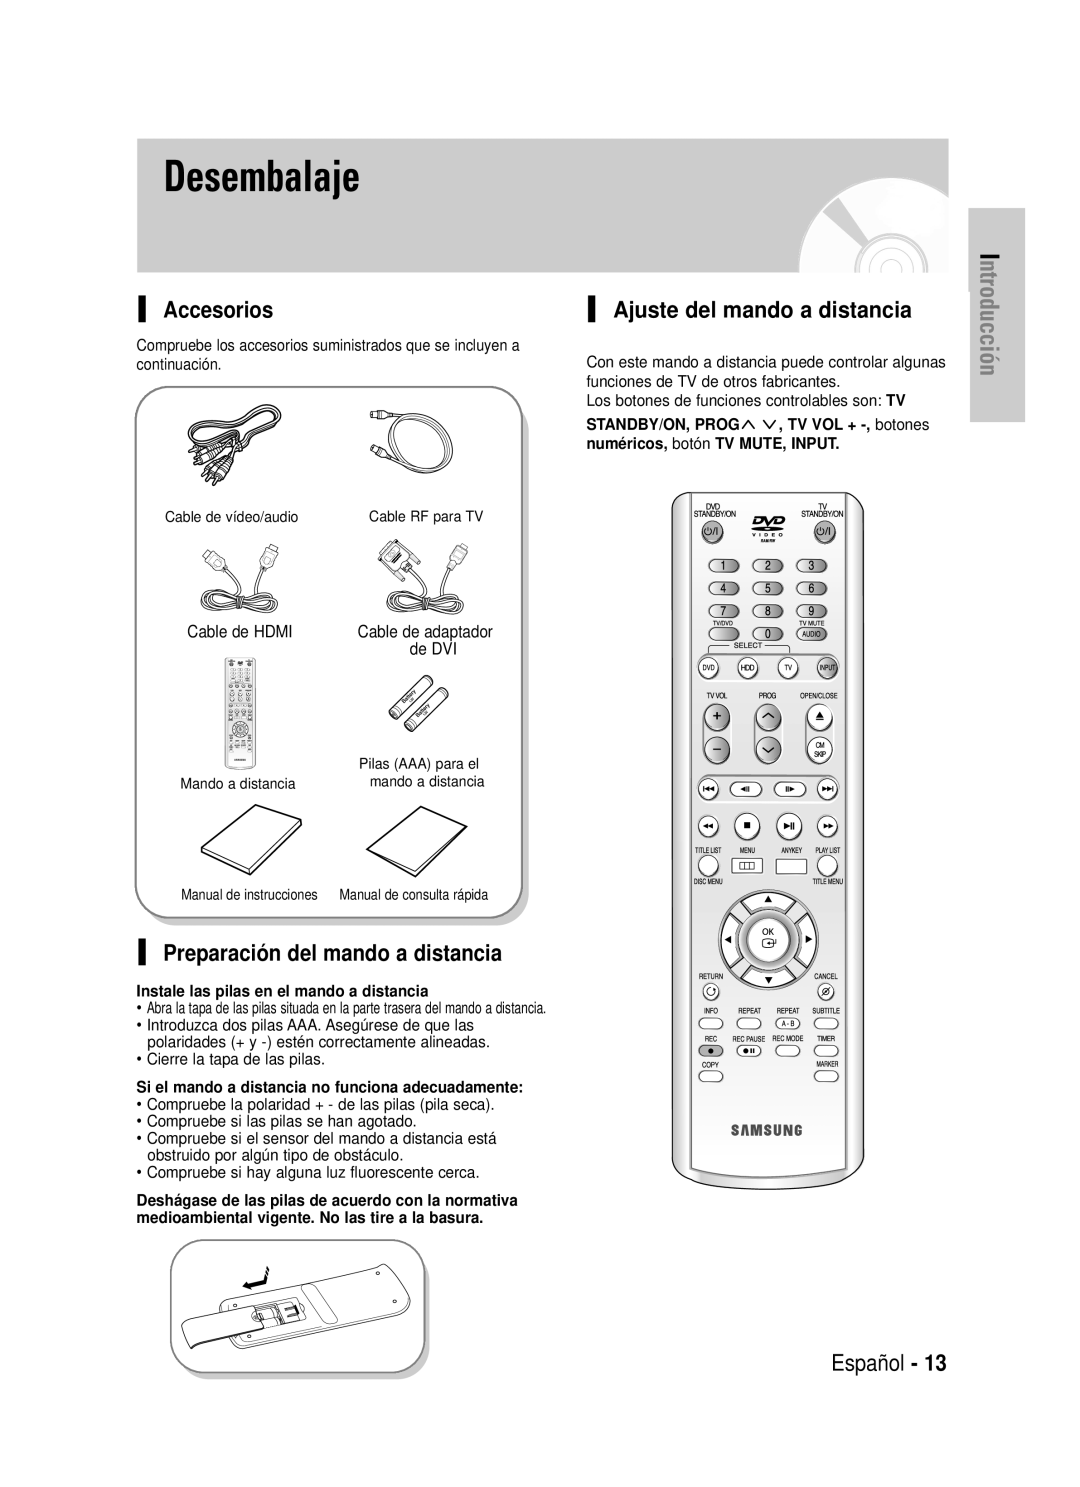 Samsung DVD-HR725/XEF Desembalaje, Accesorios, Preparación del mando a distancia, Ajuste del mando a distancia, Español 